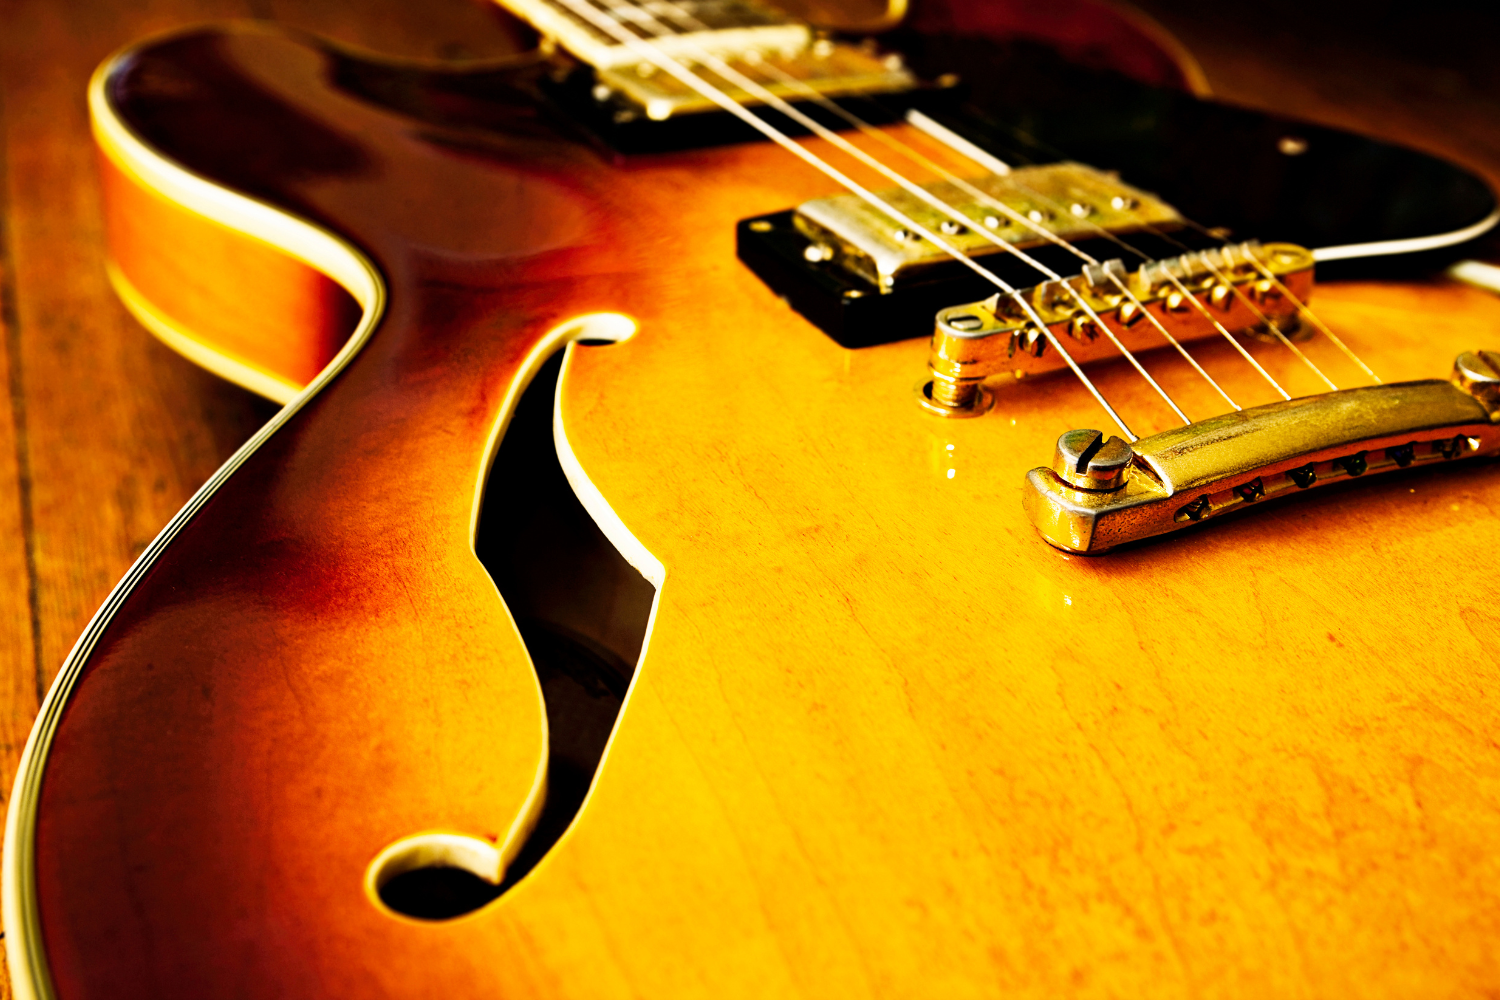 Close up image of a jazz guitar.